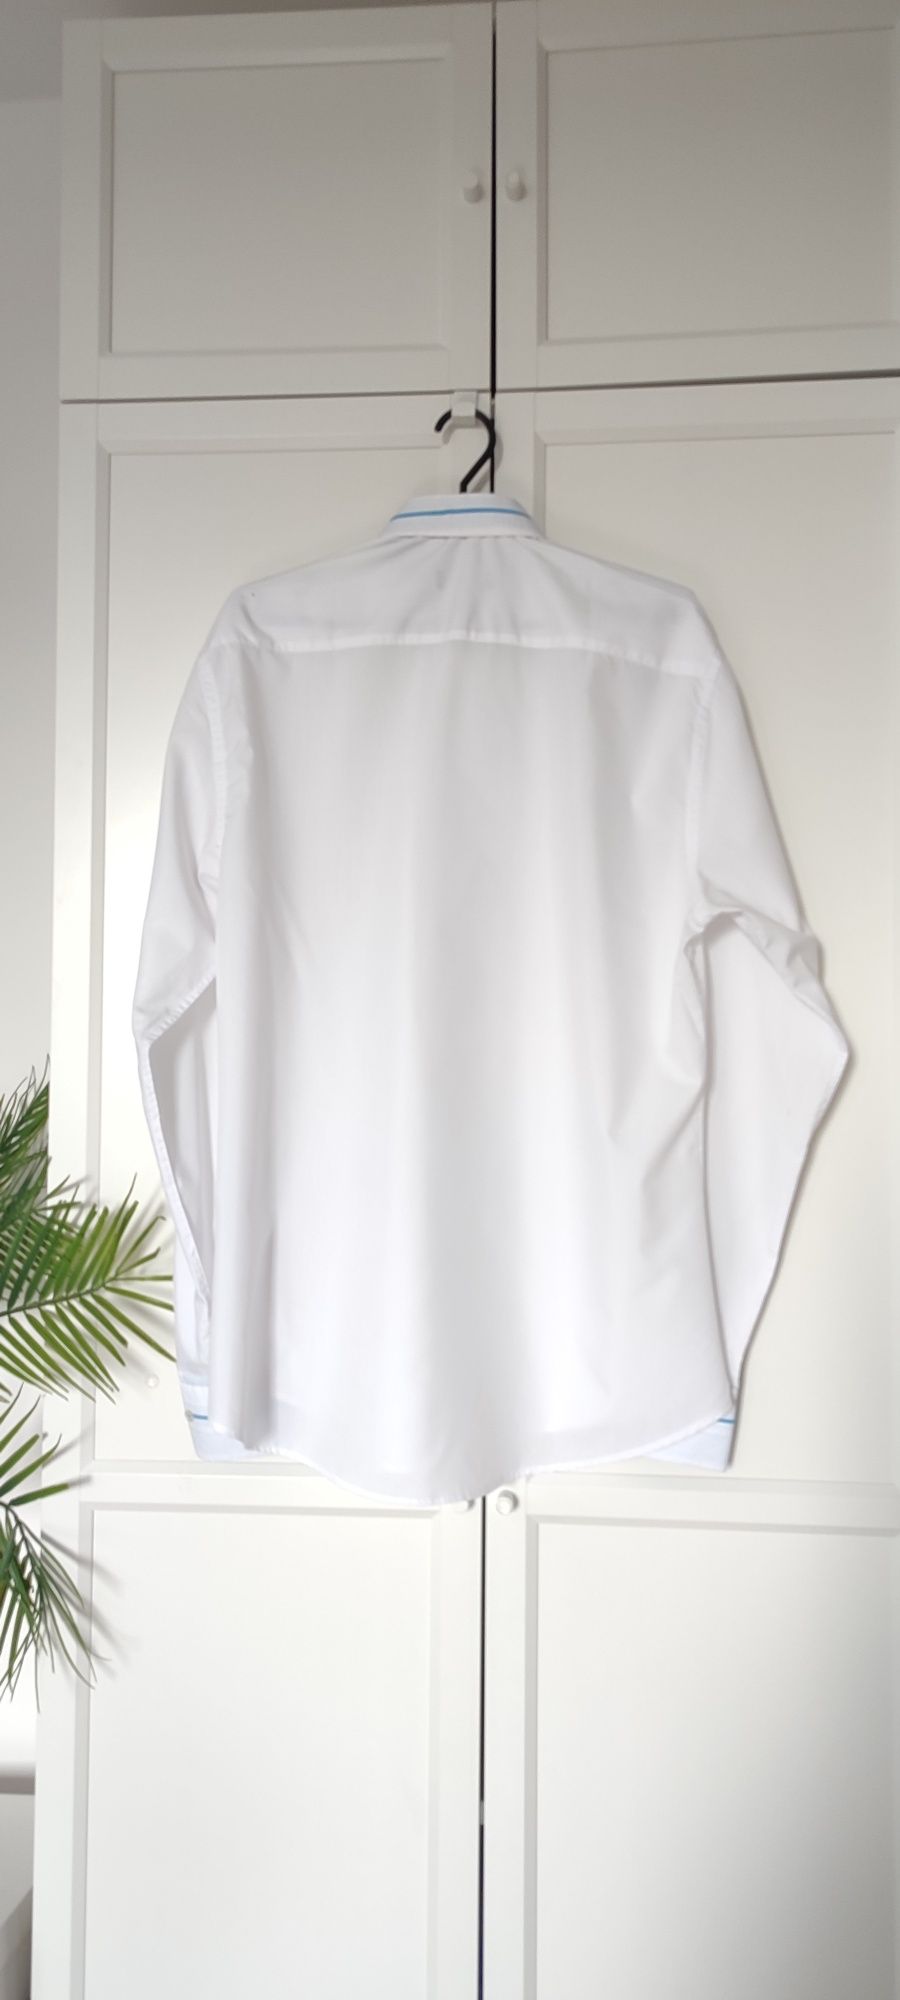 Koszula męska biała na komunię wesele zapinana rozmiar 42 XL jak nowa